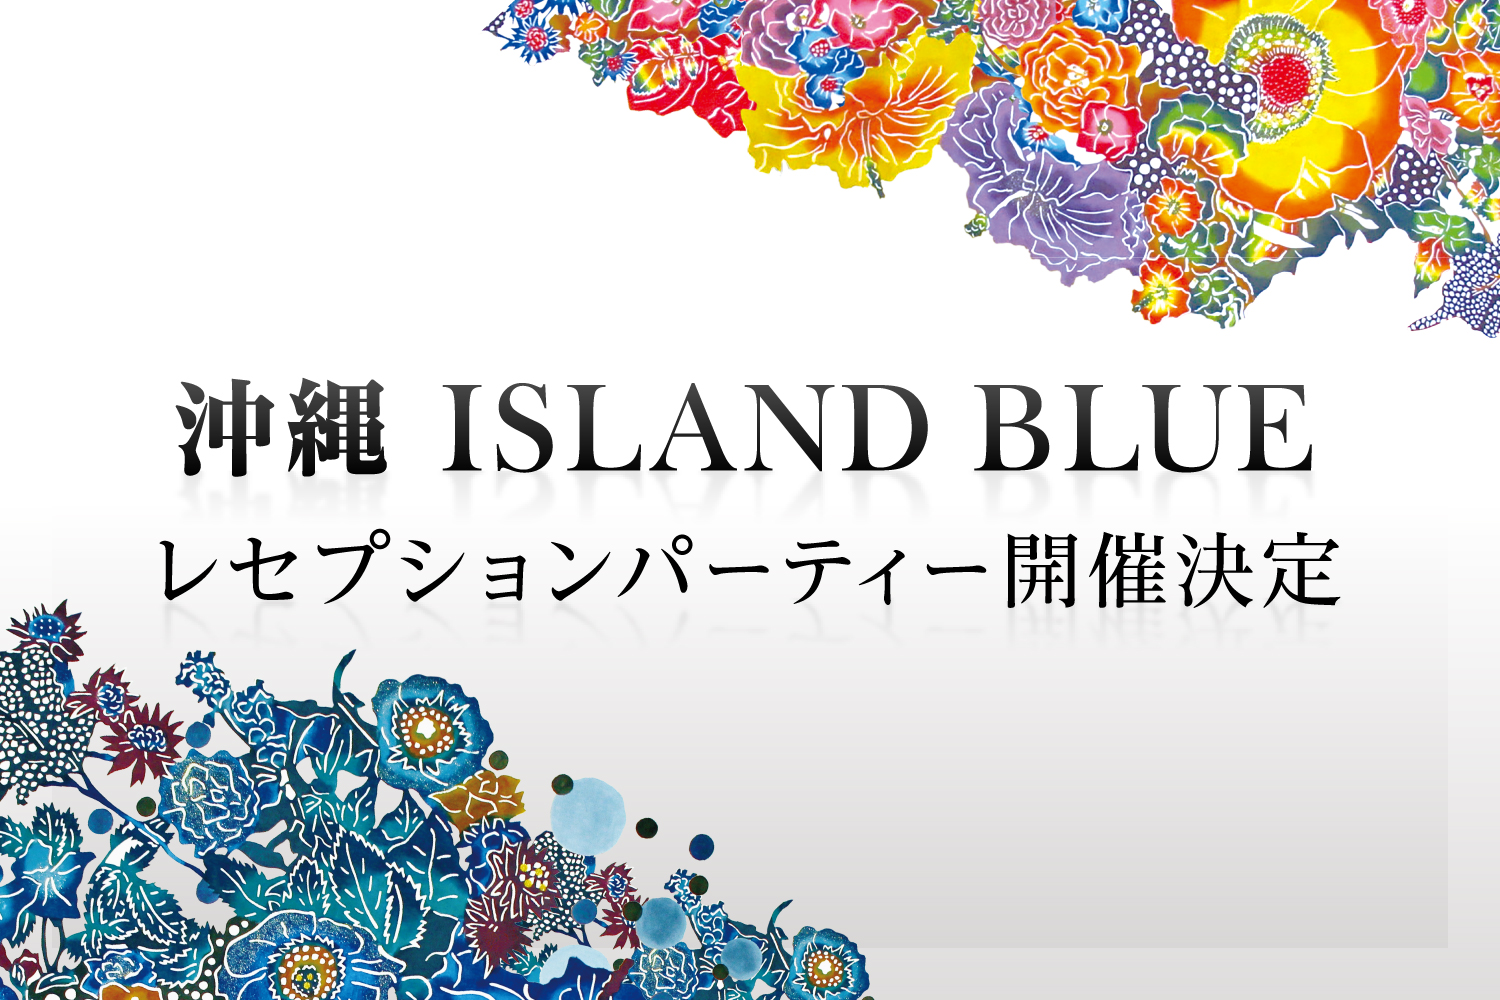 沖縄 ISLAND BLUE レセプションパーティー開催決定!